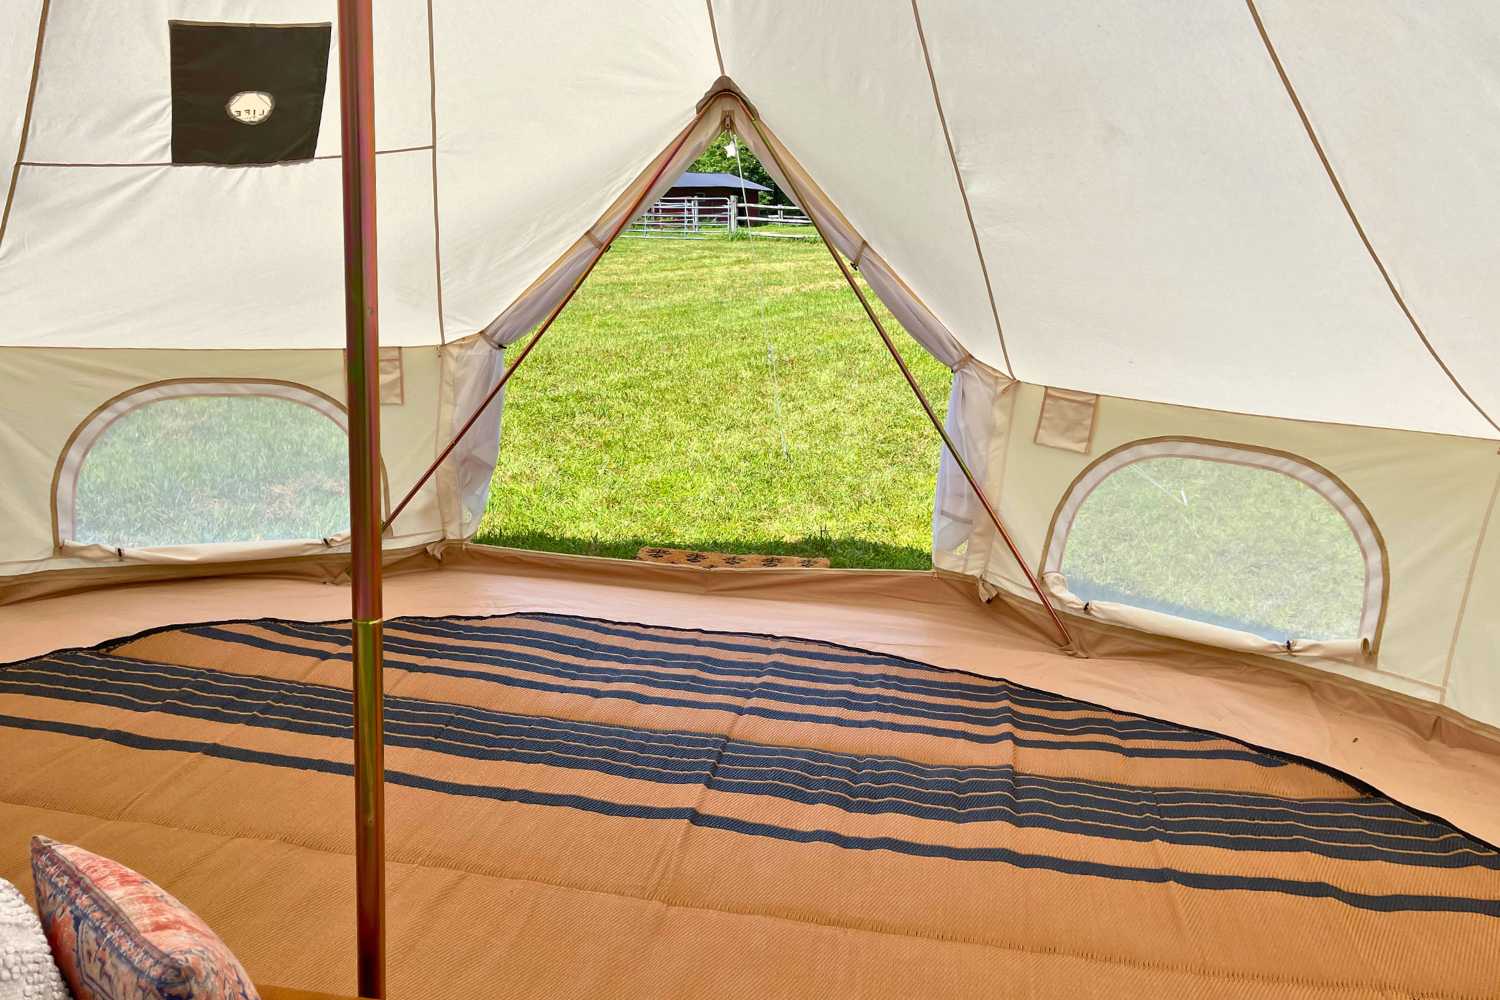 Life inTents Tents Zephyr 19' (6M) Canvas Bell Tent | Life inTents